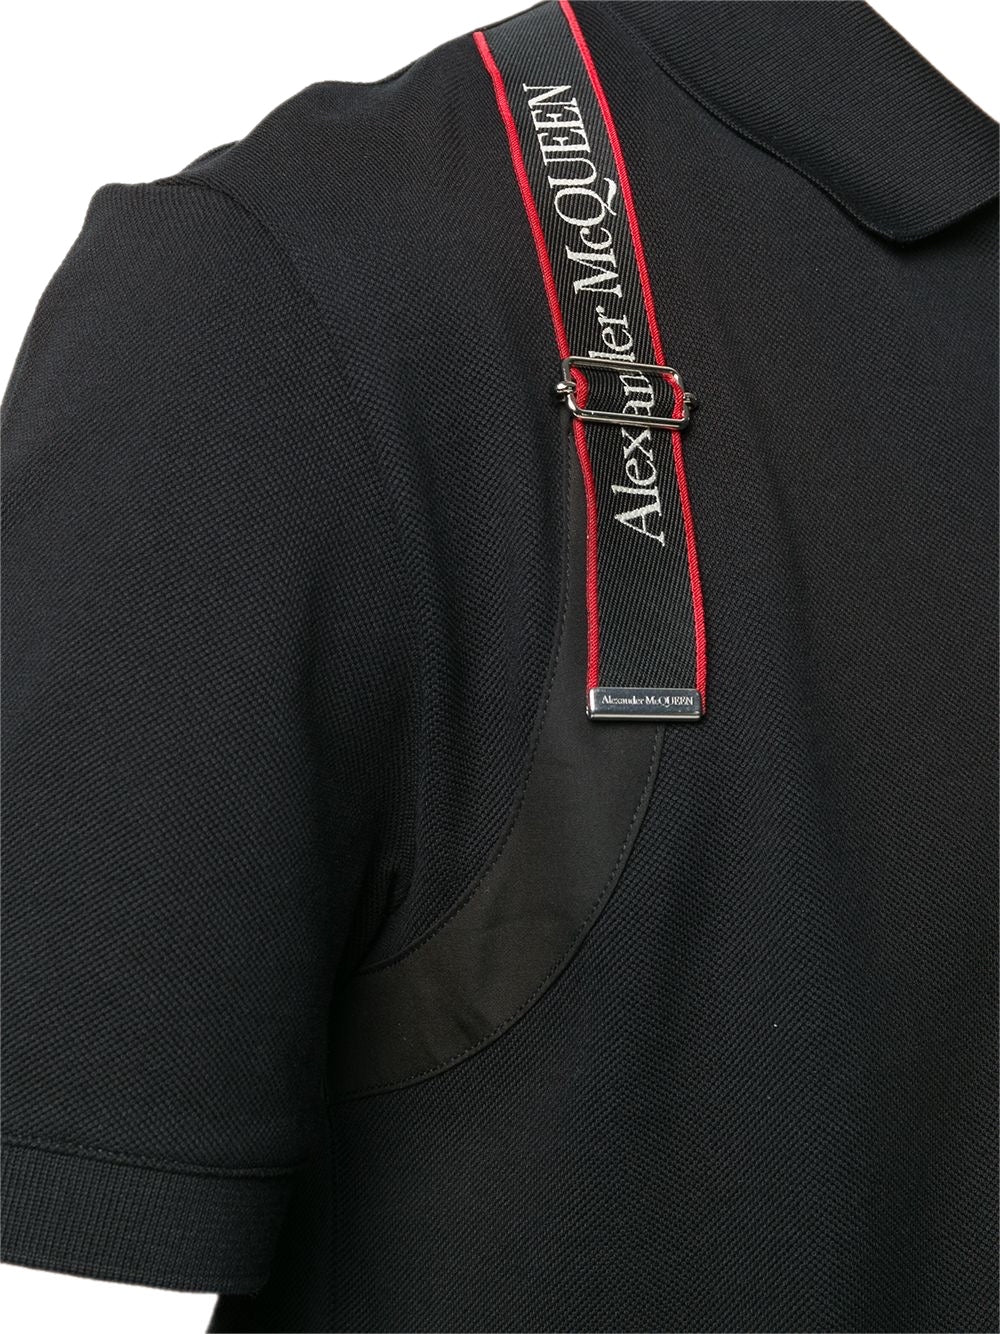 Alexander McQueen logo harness-strap polo shirt